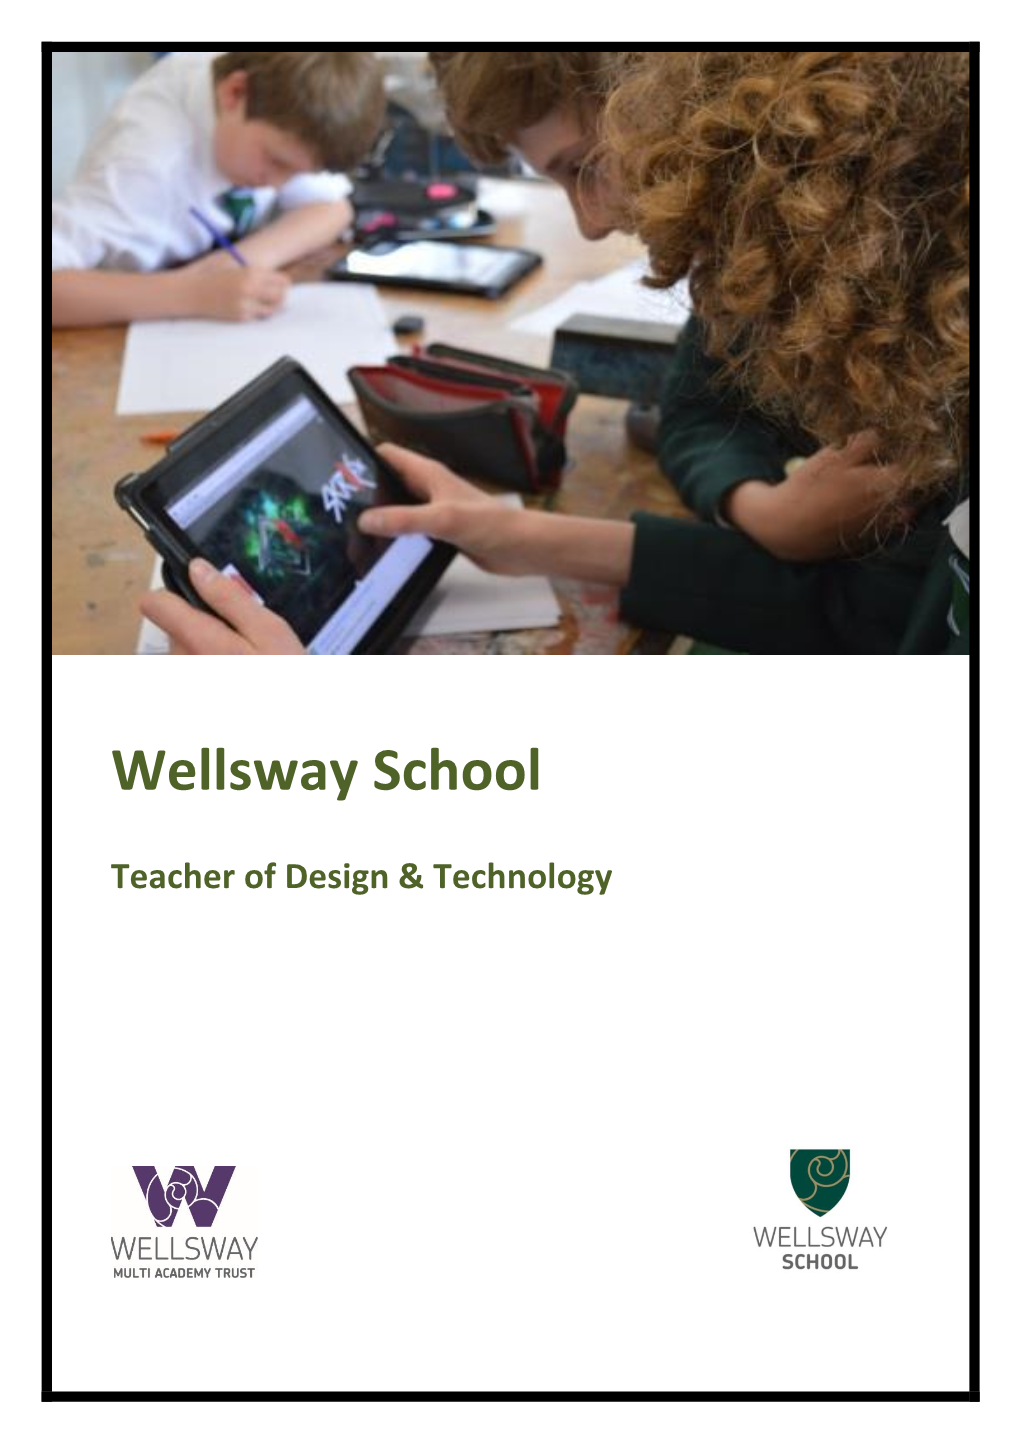 Wellsway School